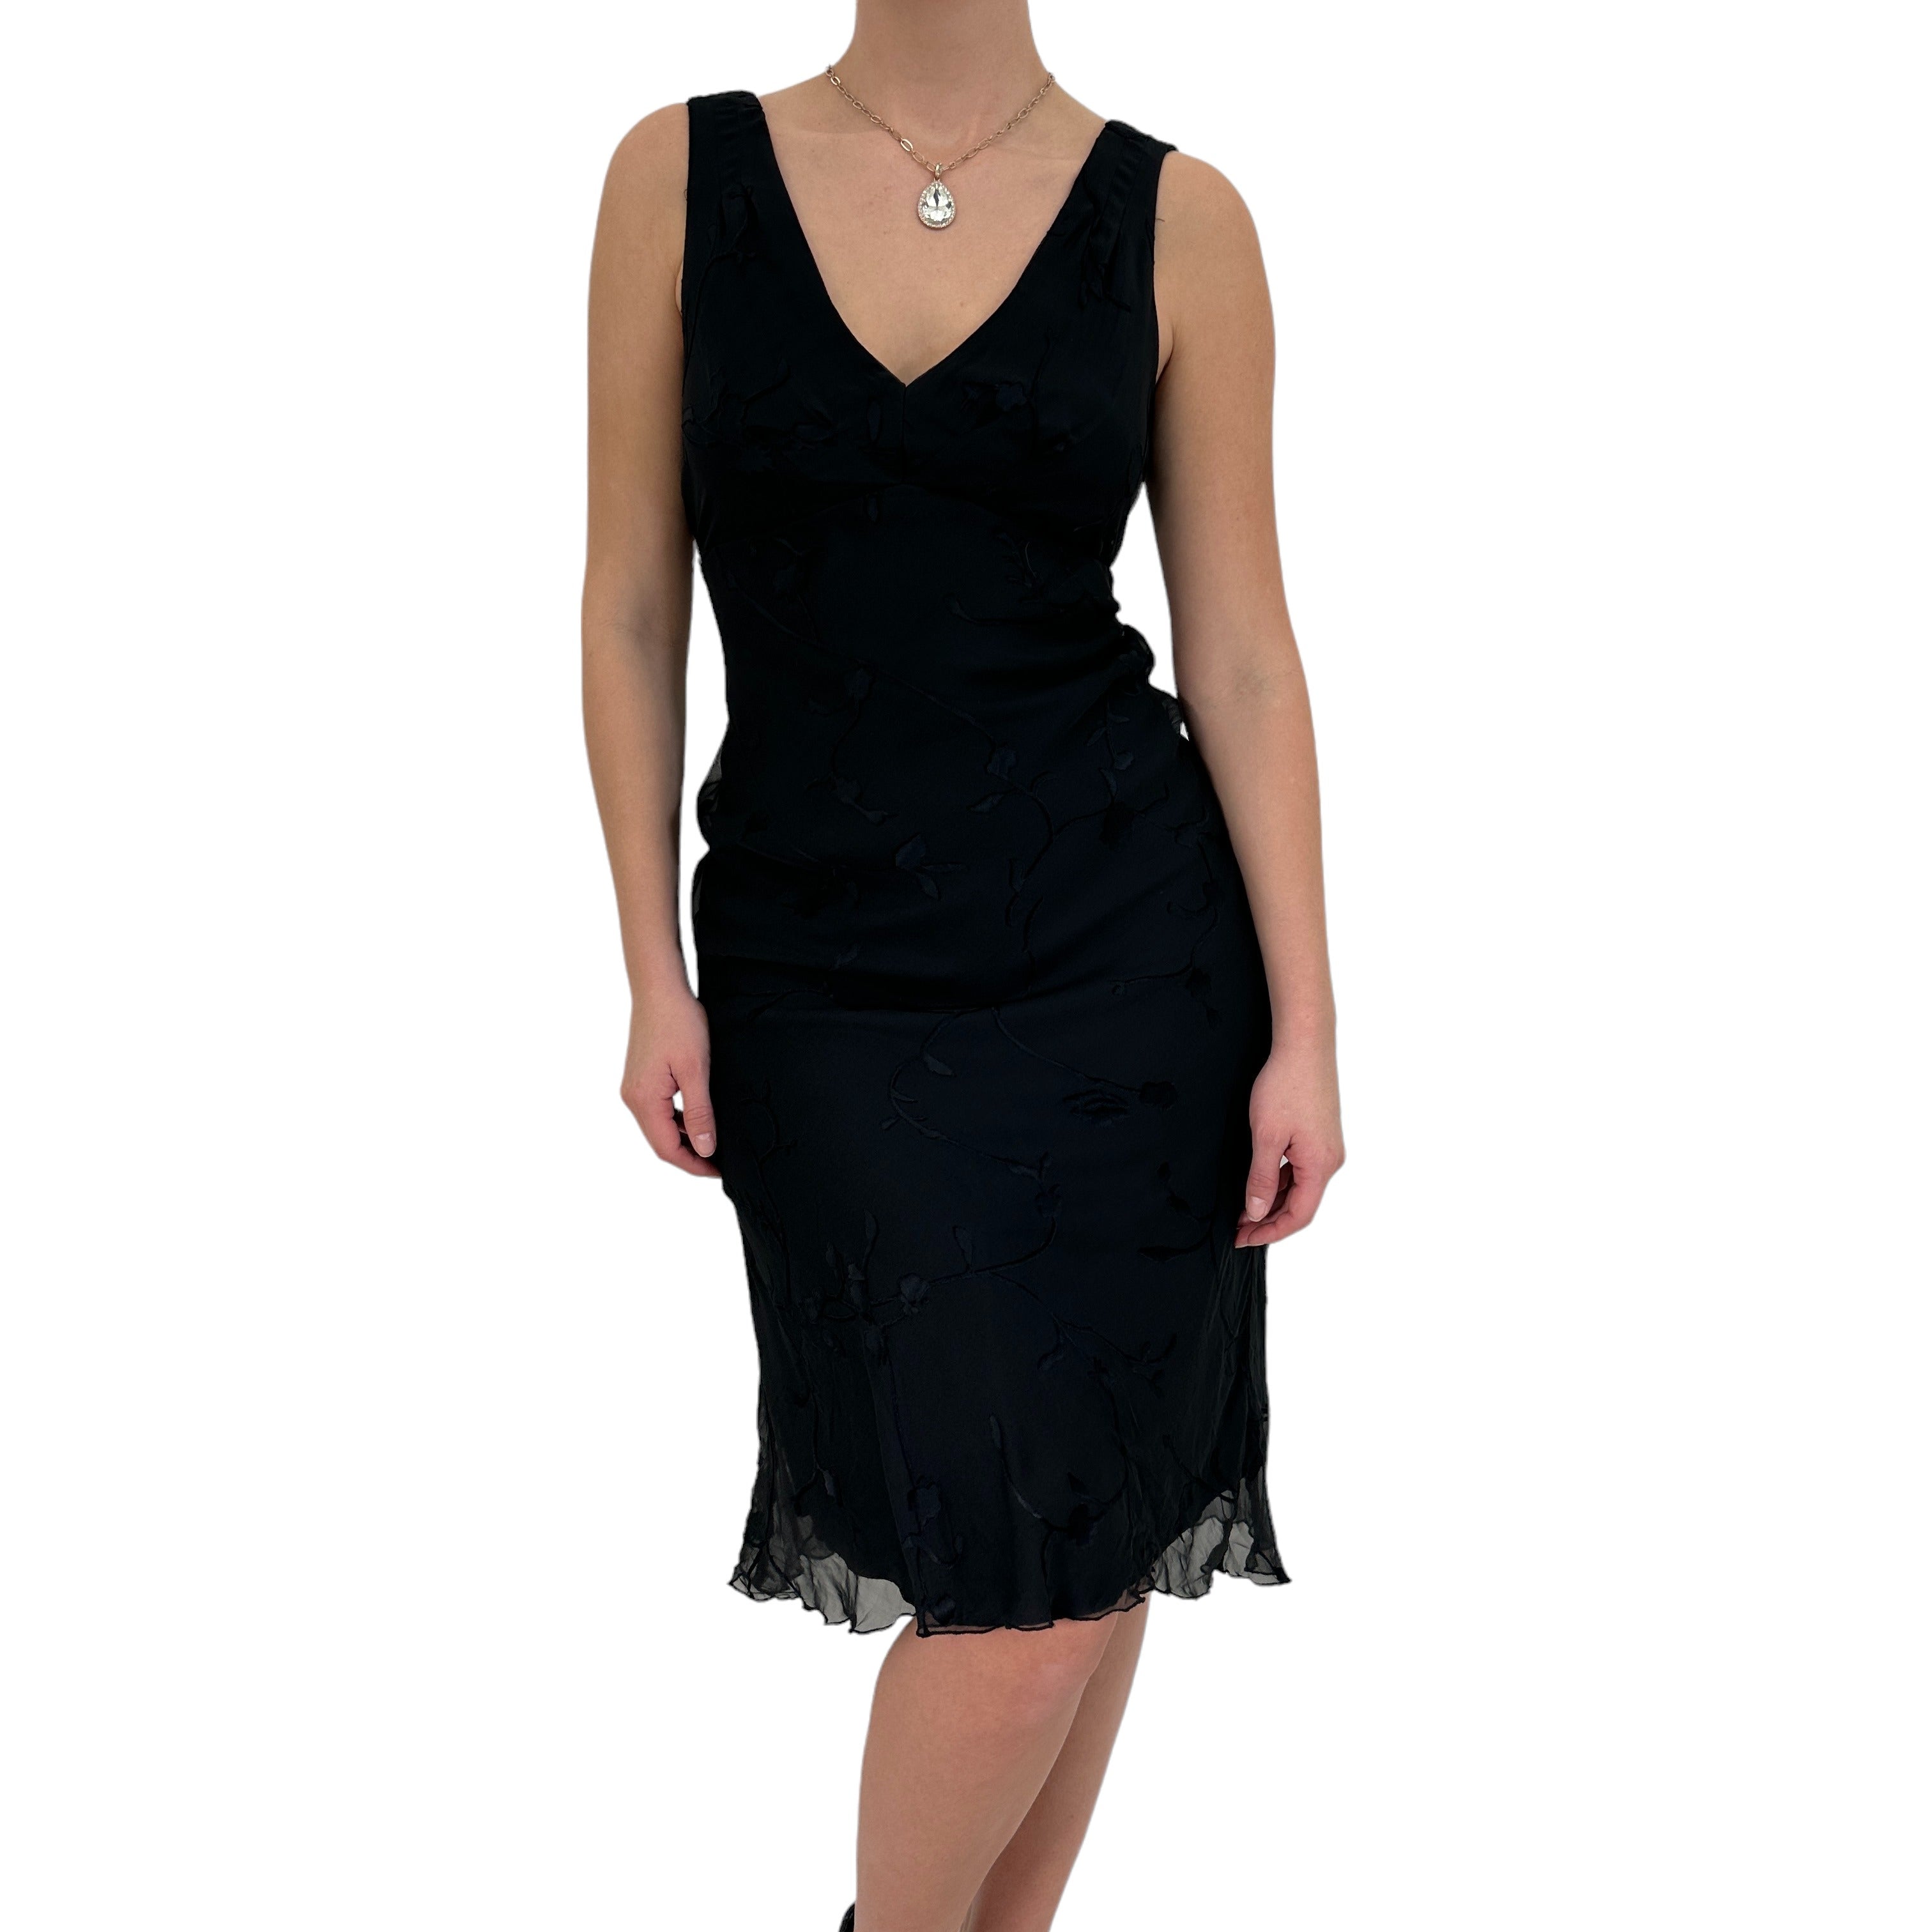 Y2k Vintage Black Floral A-Line Dress [S]